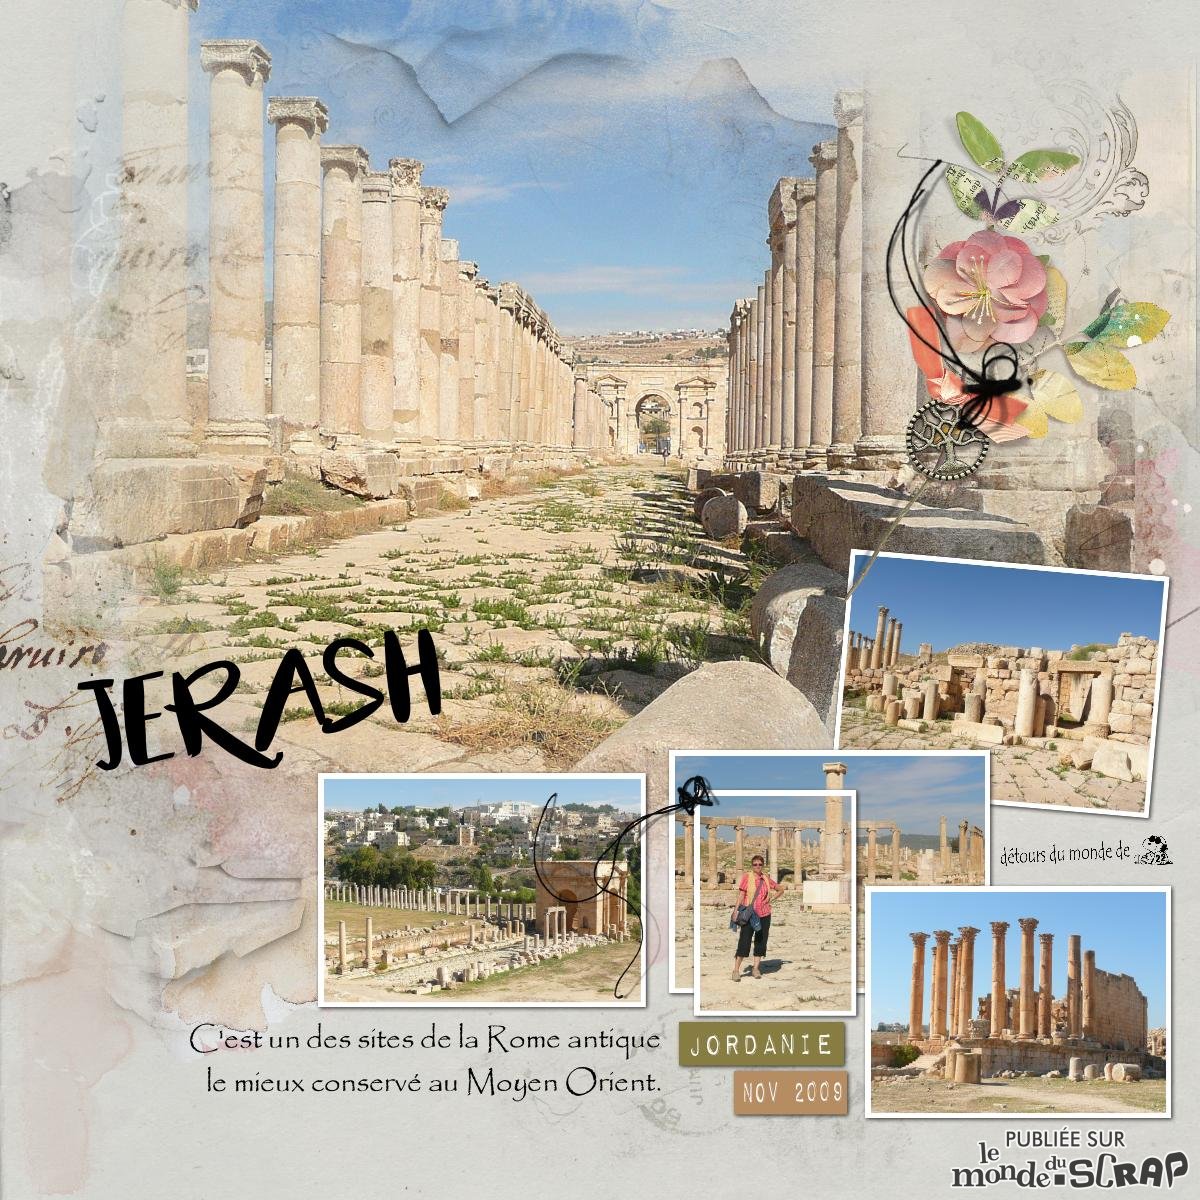 Jerash - Jordanie